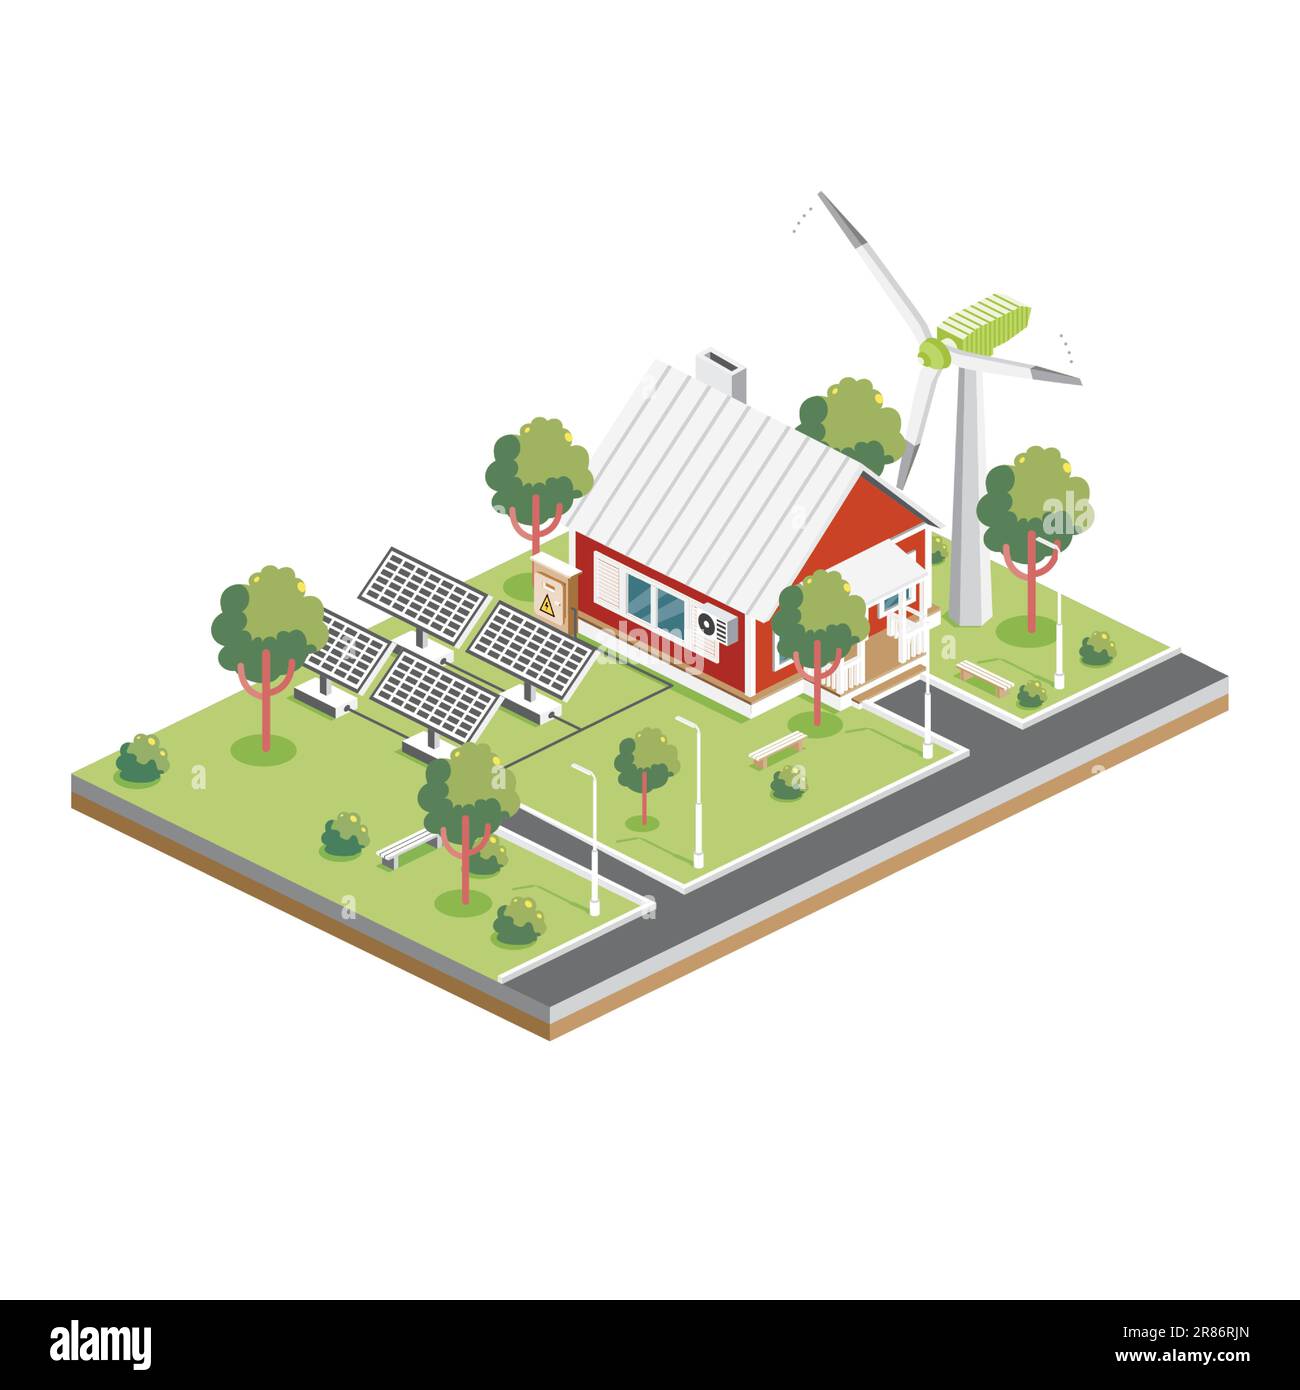 Pannelli solari isometrici con turbina eolica in periferia. Green Eco friendly House. Elemento infografico. Illustrazione vettoriale. Architettura cittadina isolata. Illustrazione Vettoriale